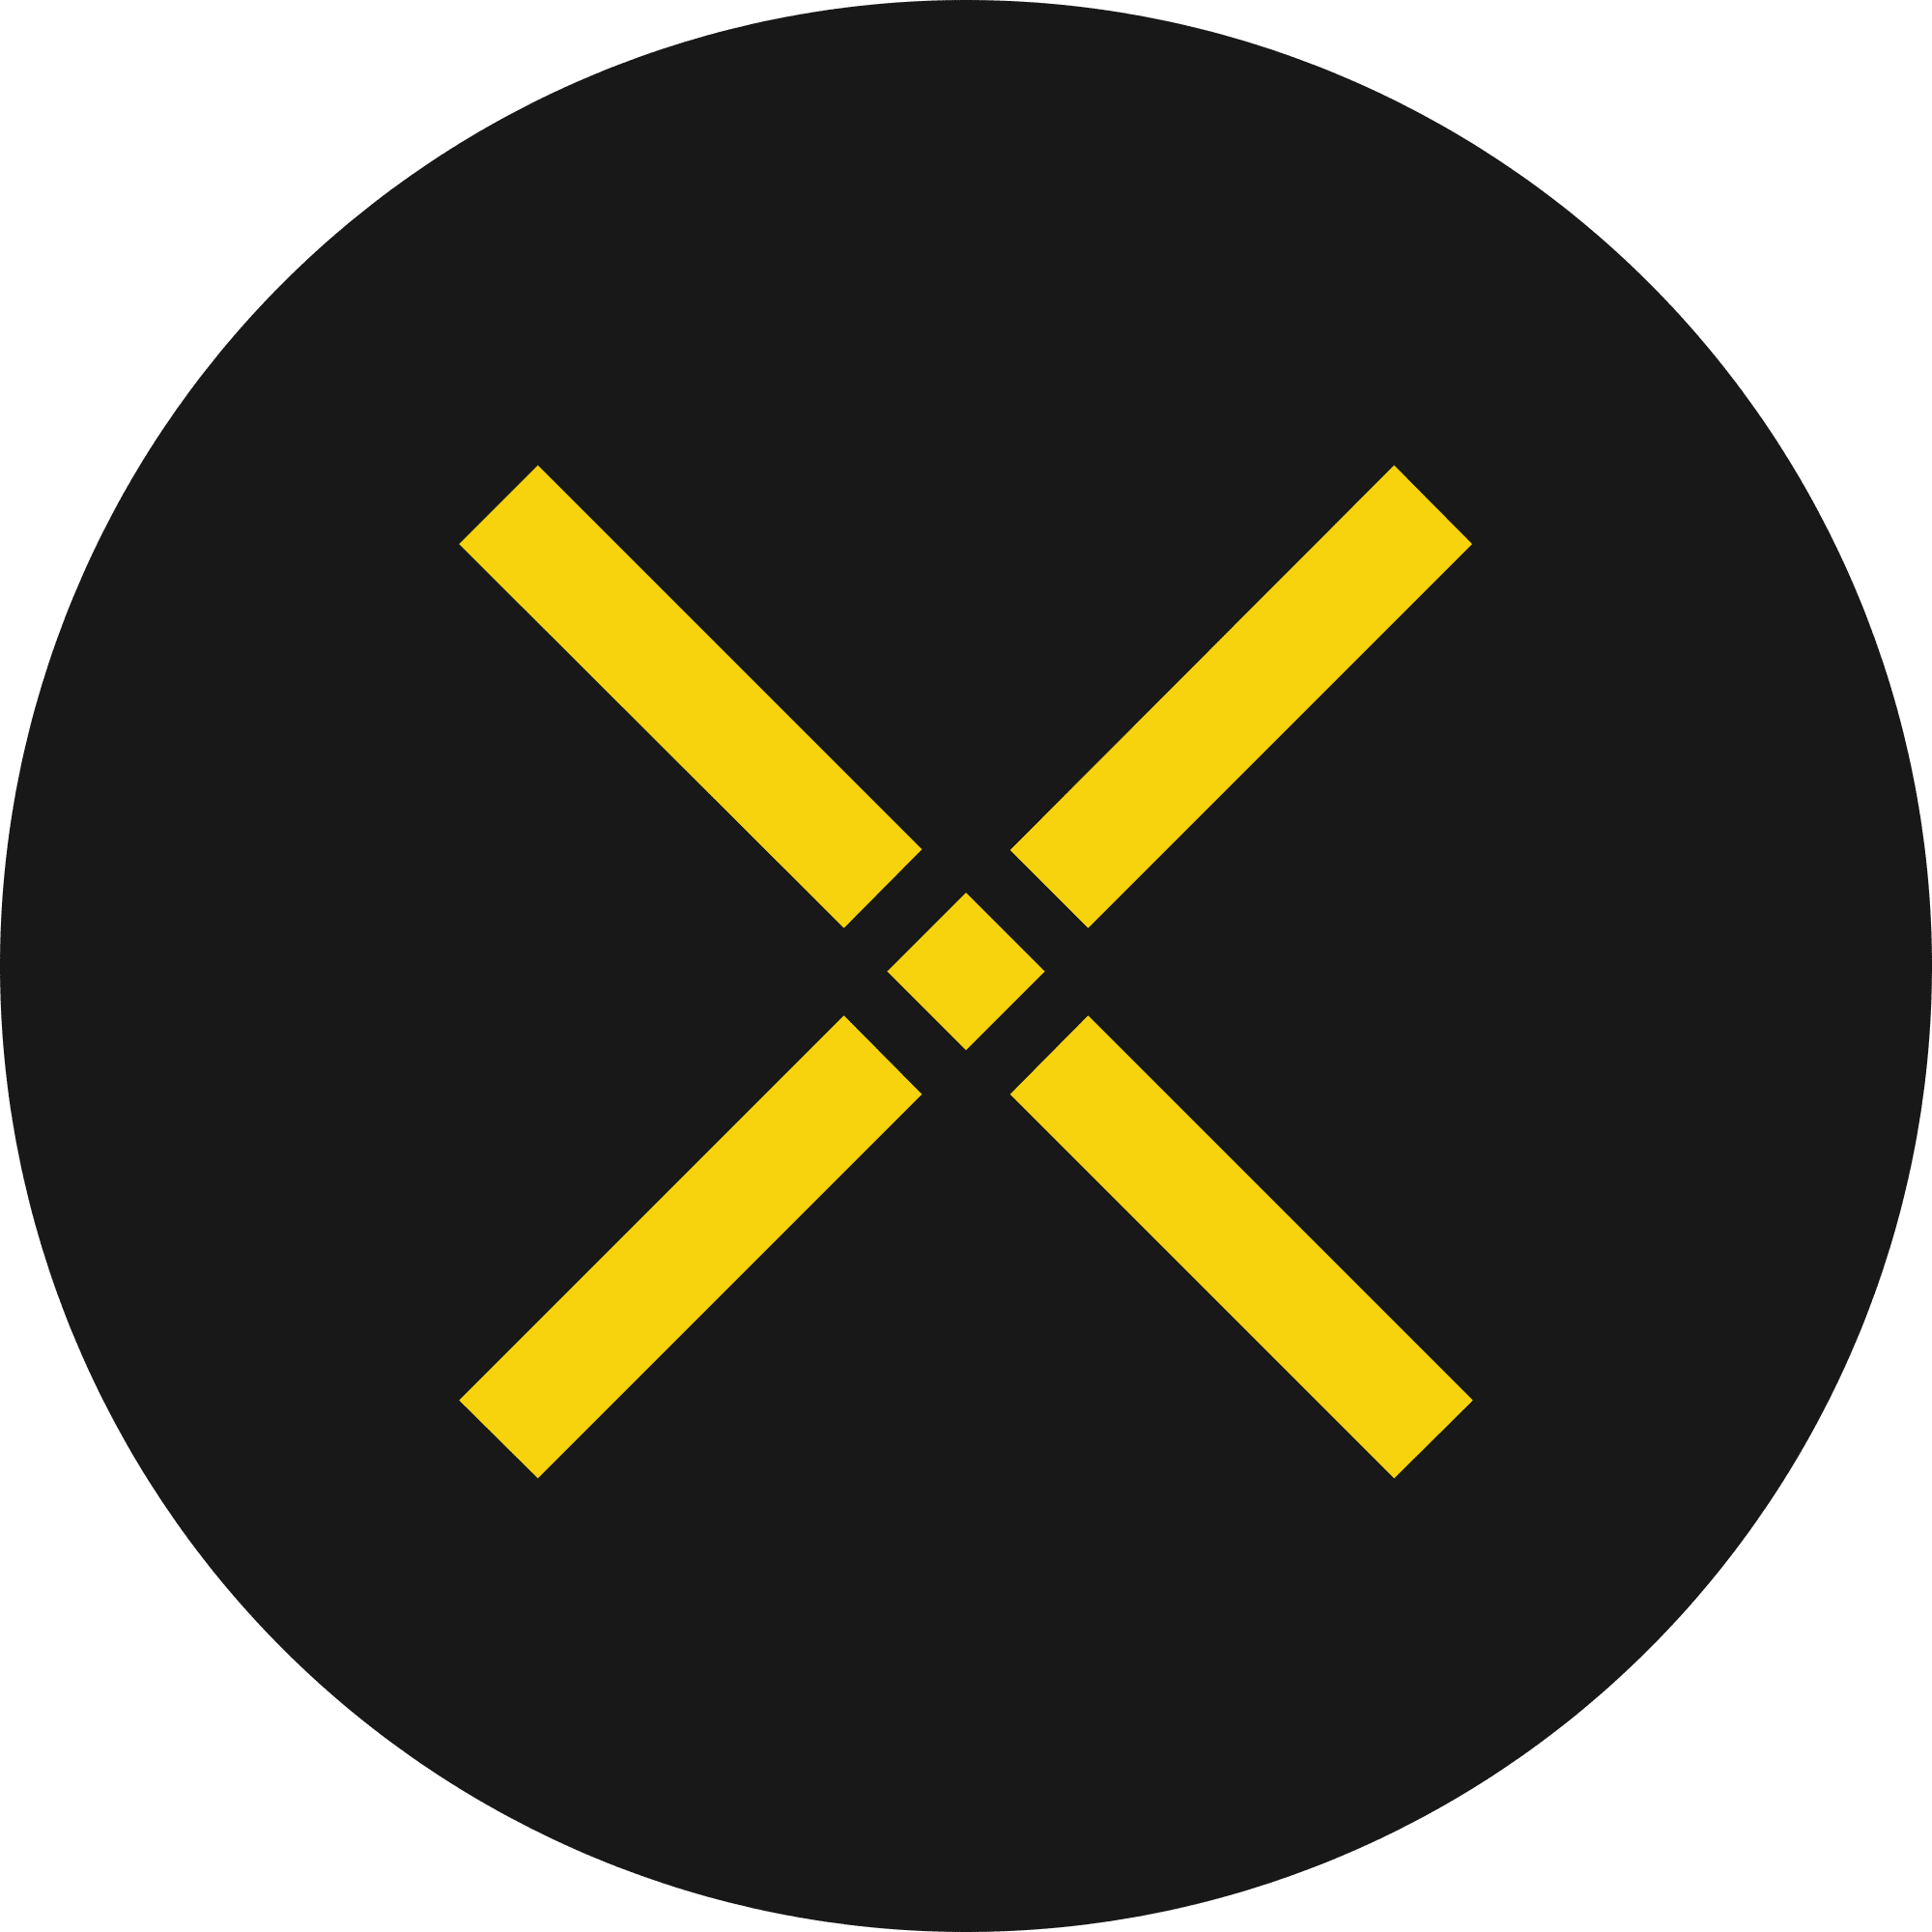 Pundi X logo in png format